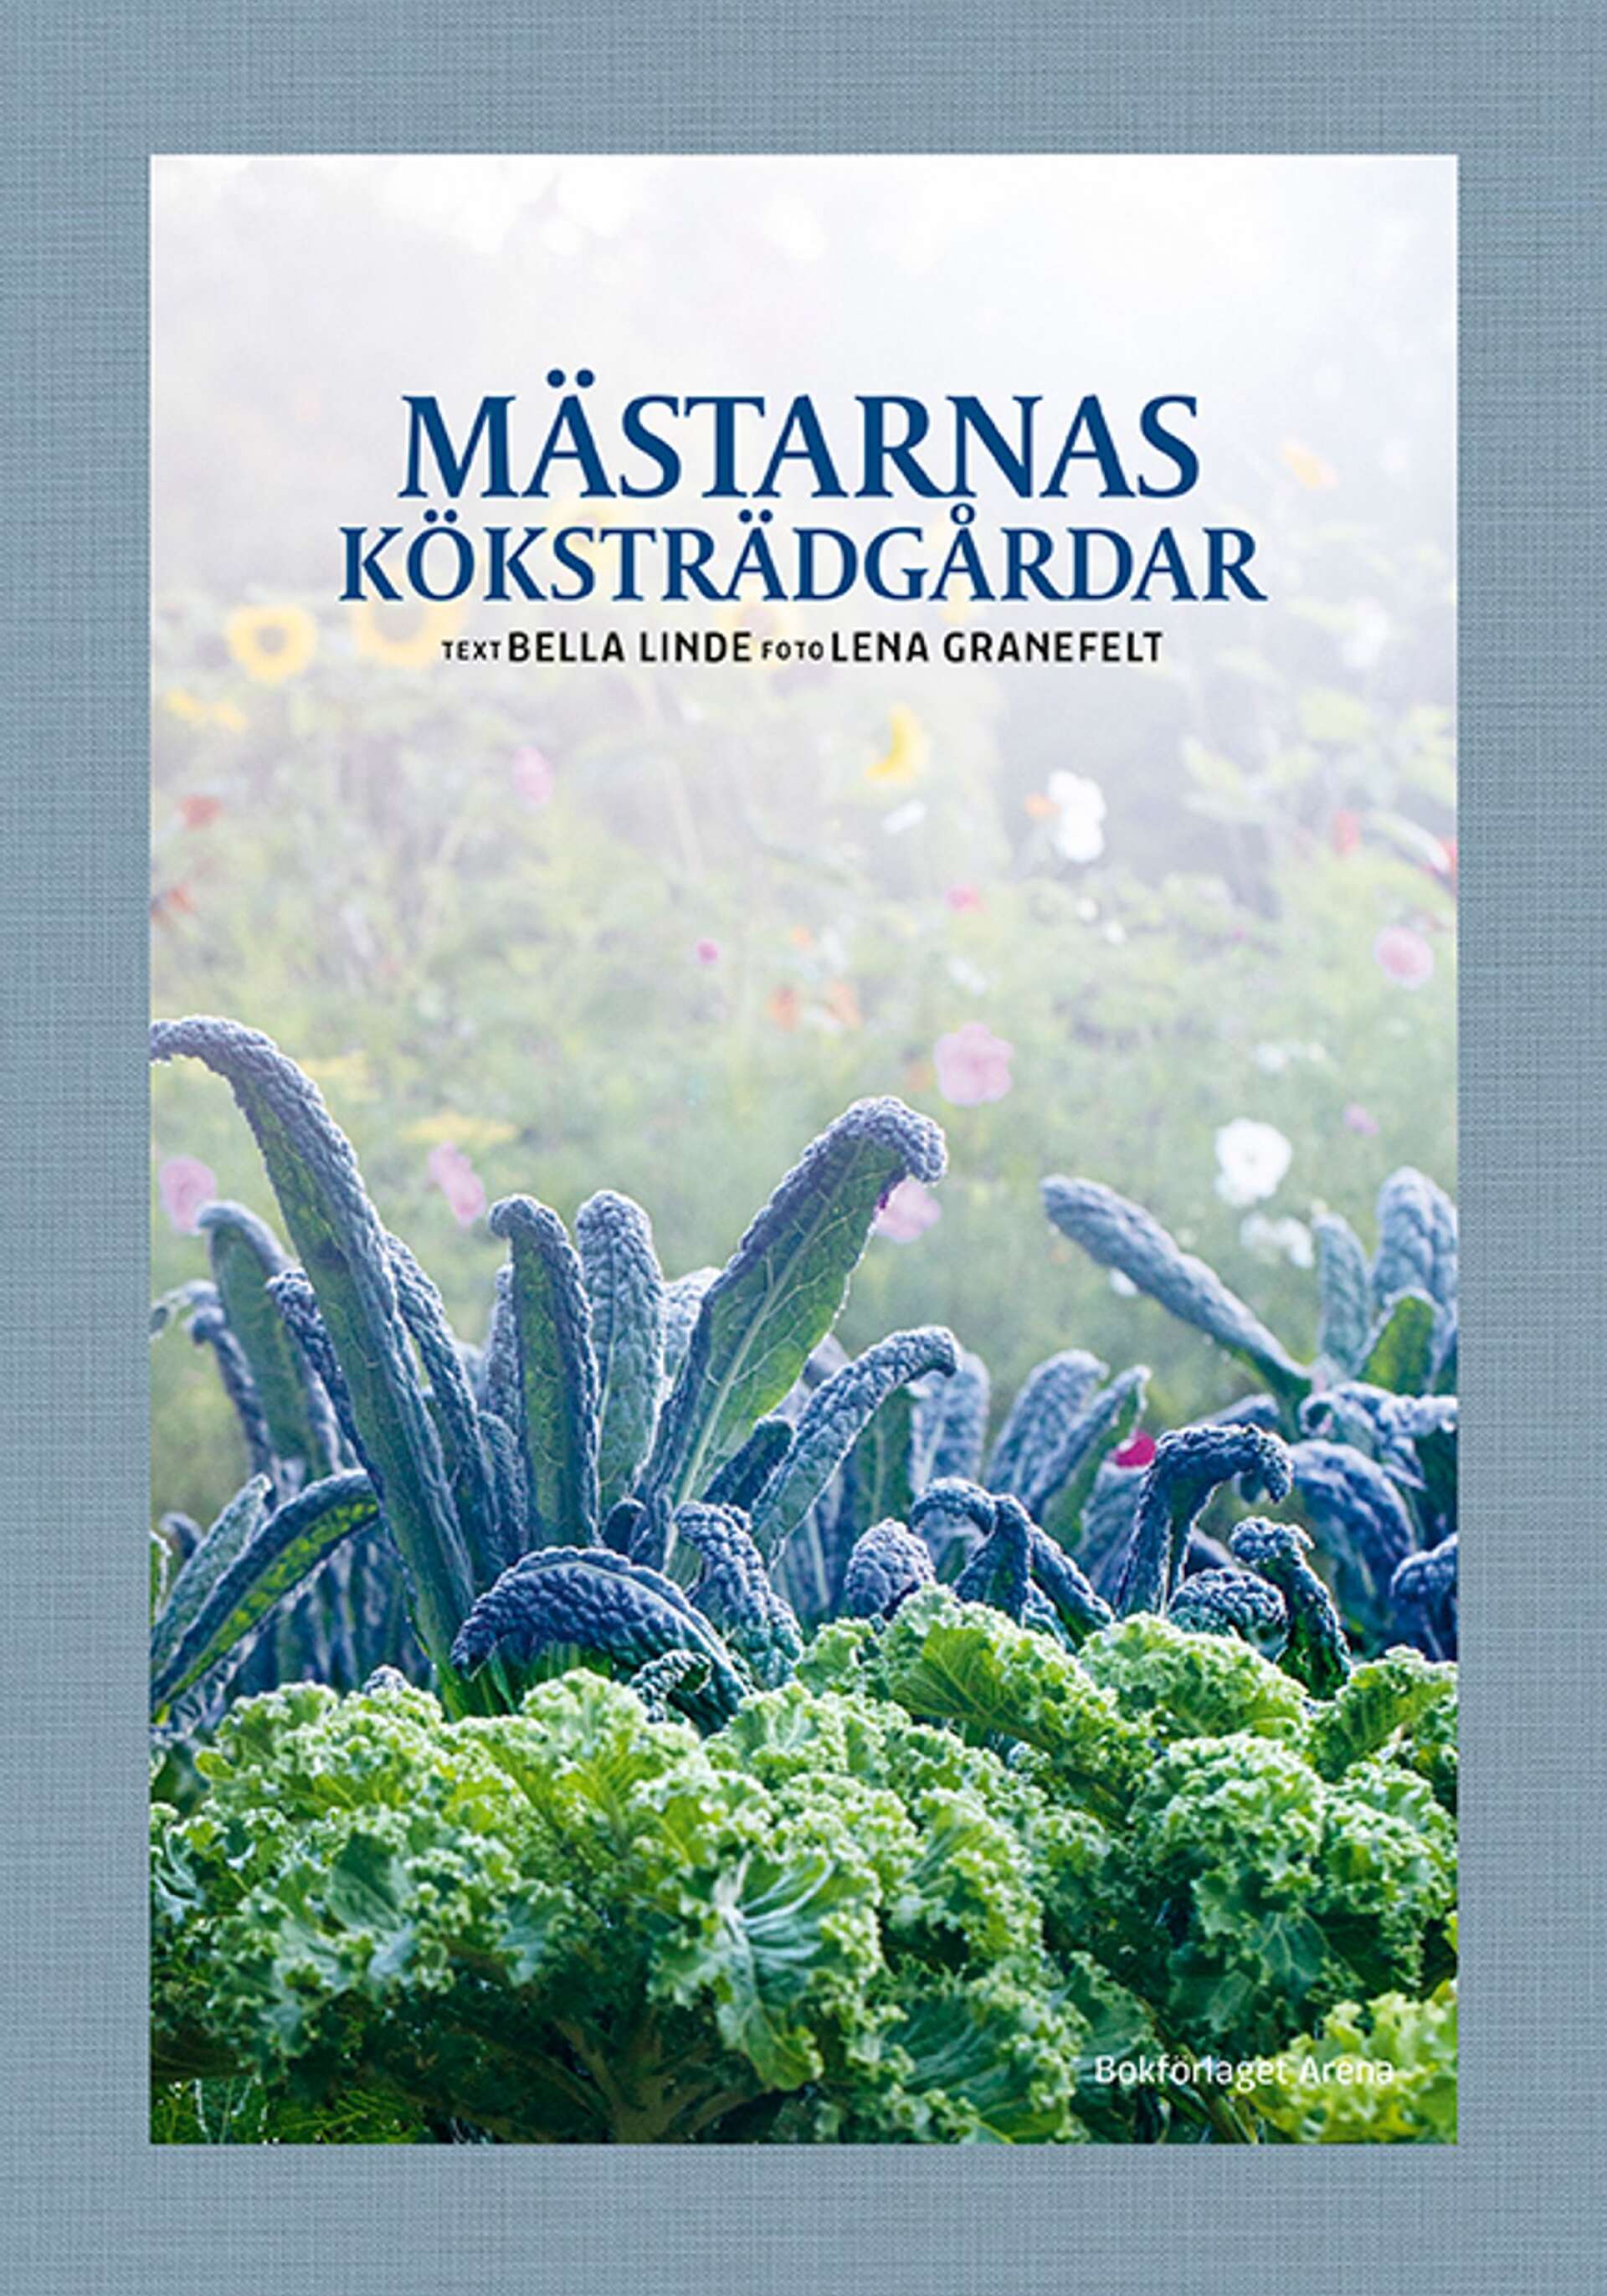 ”En alldeles utmärkt spännande bok för såväl amatör som erfaren odlare.”